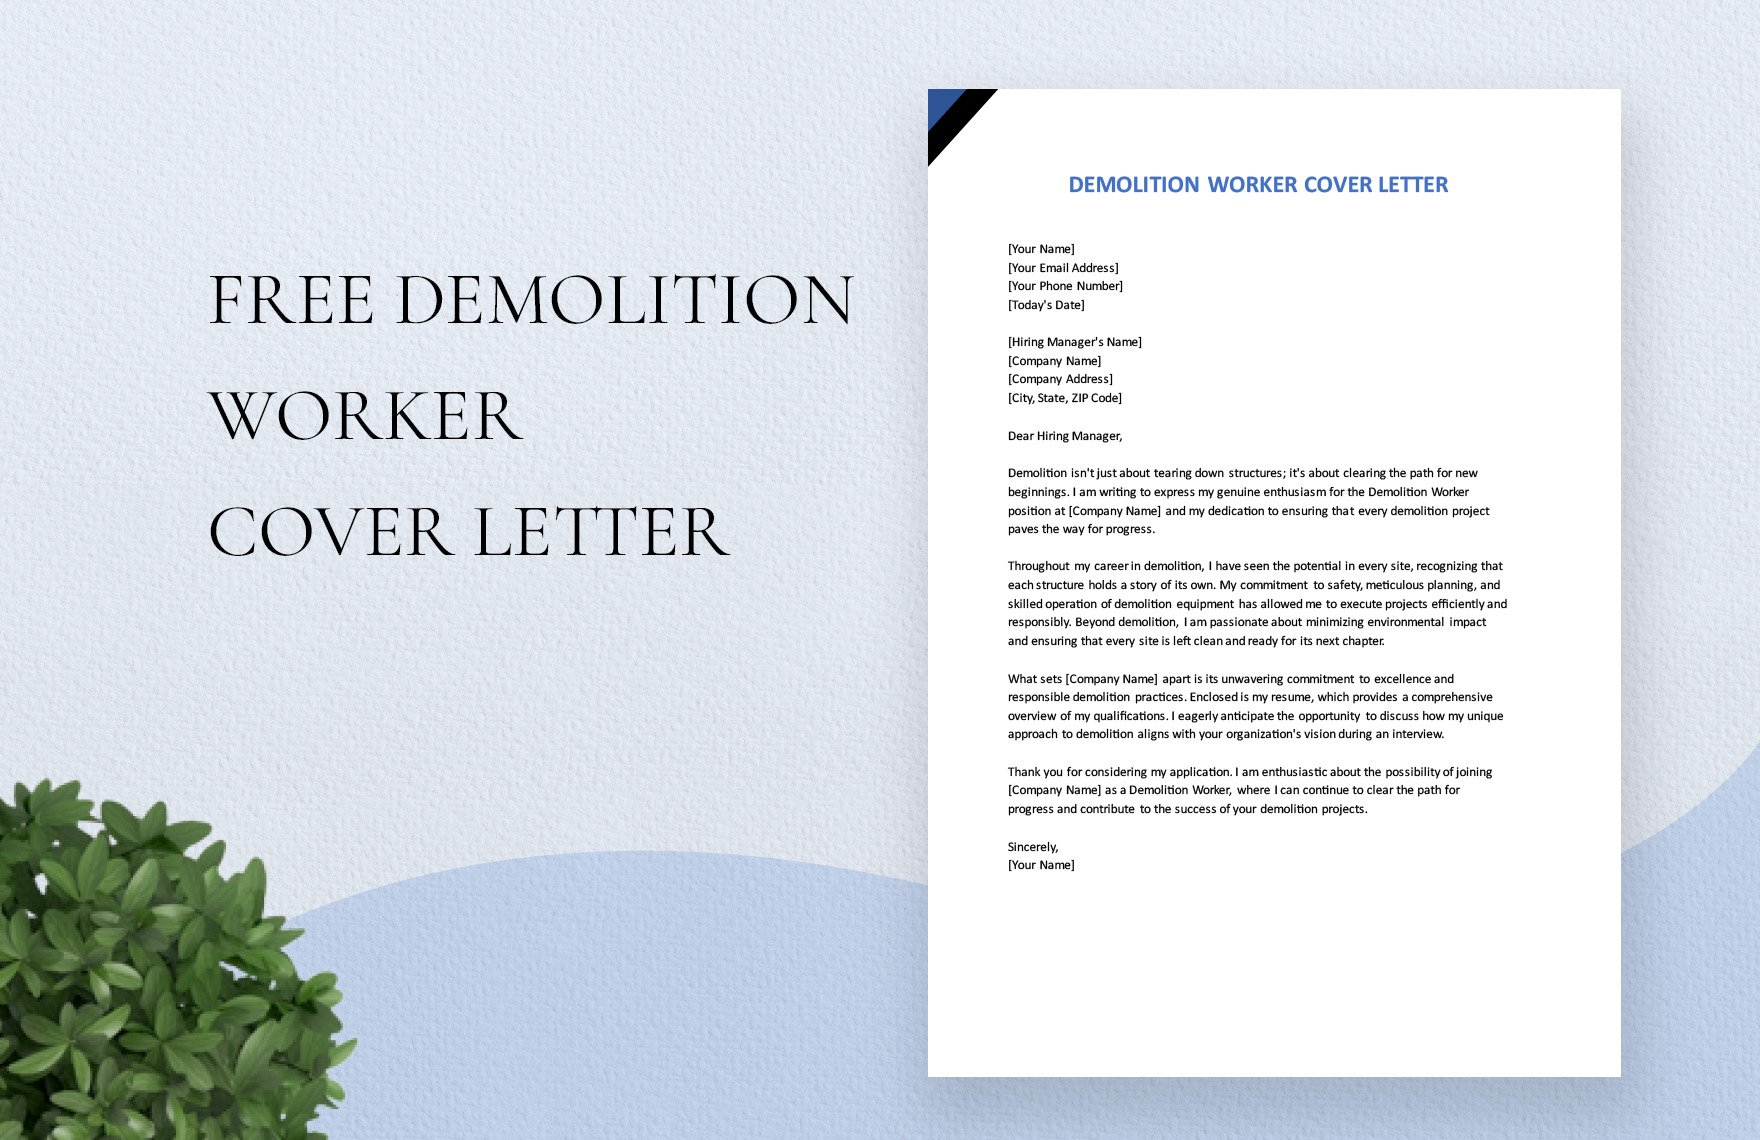 Demolition Worker Cover Letter in Word, Google Docs, PDF